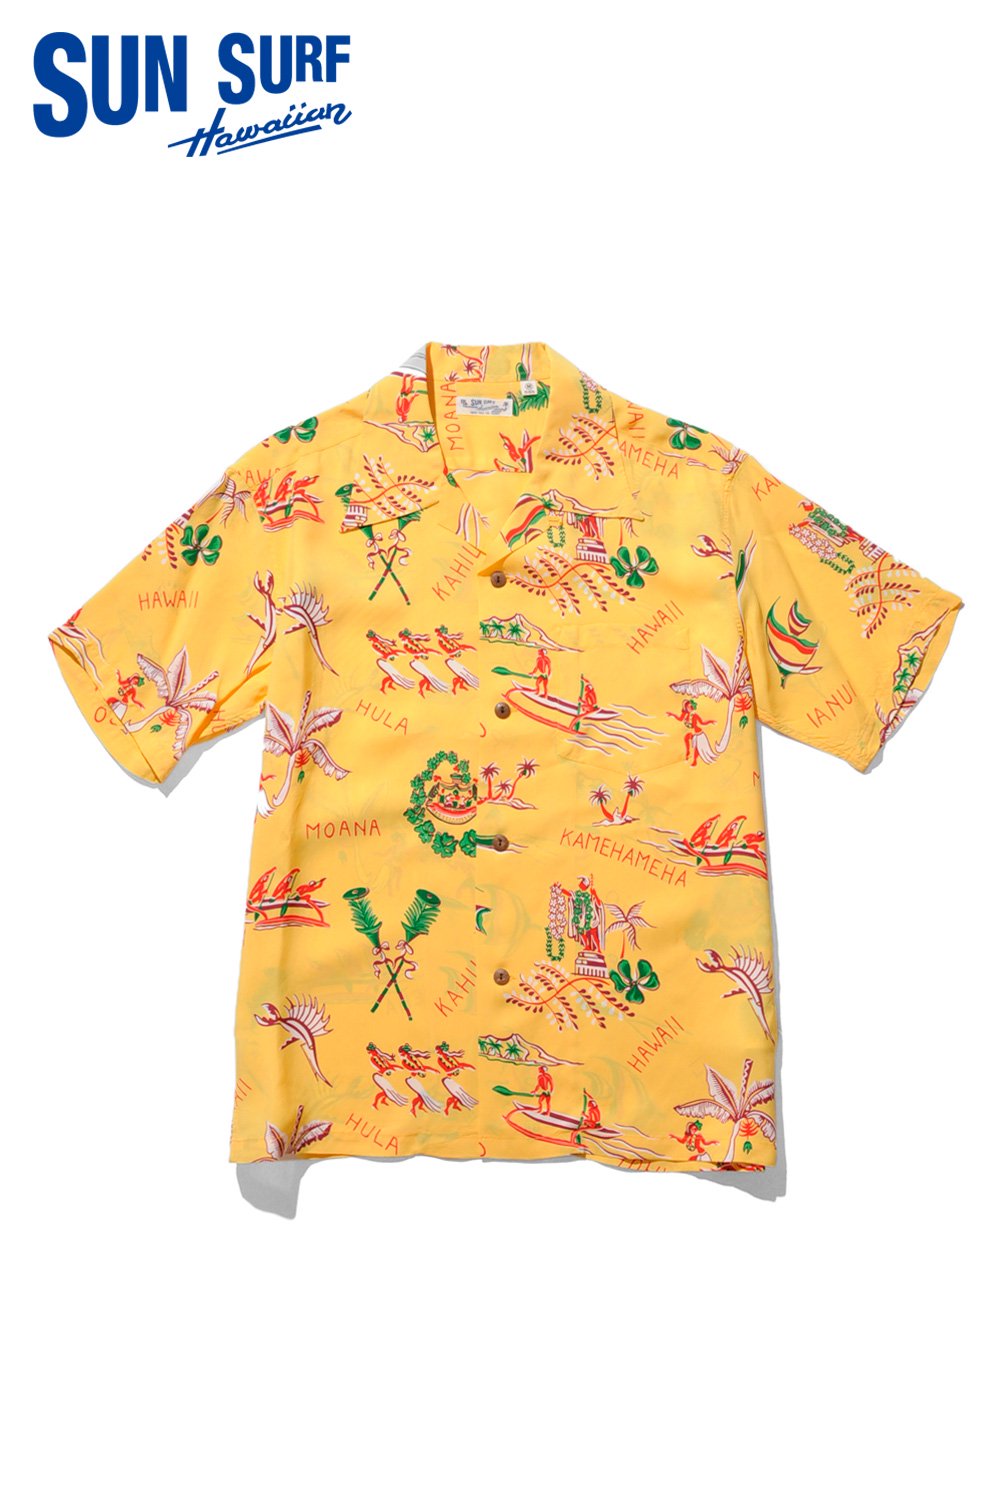 新品 サンサーフ ハワイアンシャツ ss30475シャツ